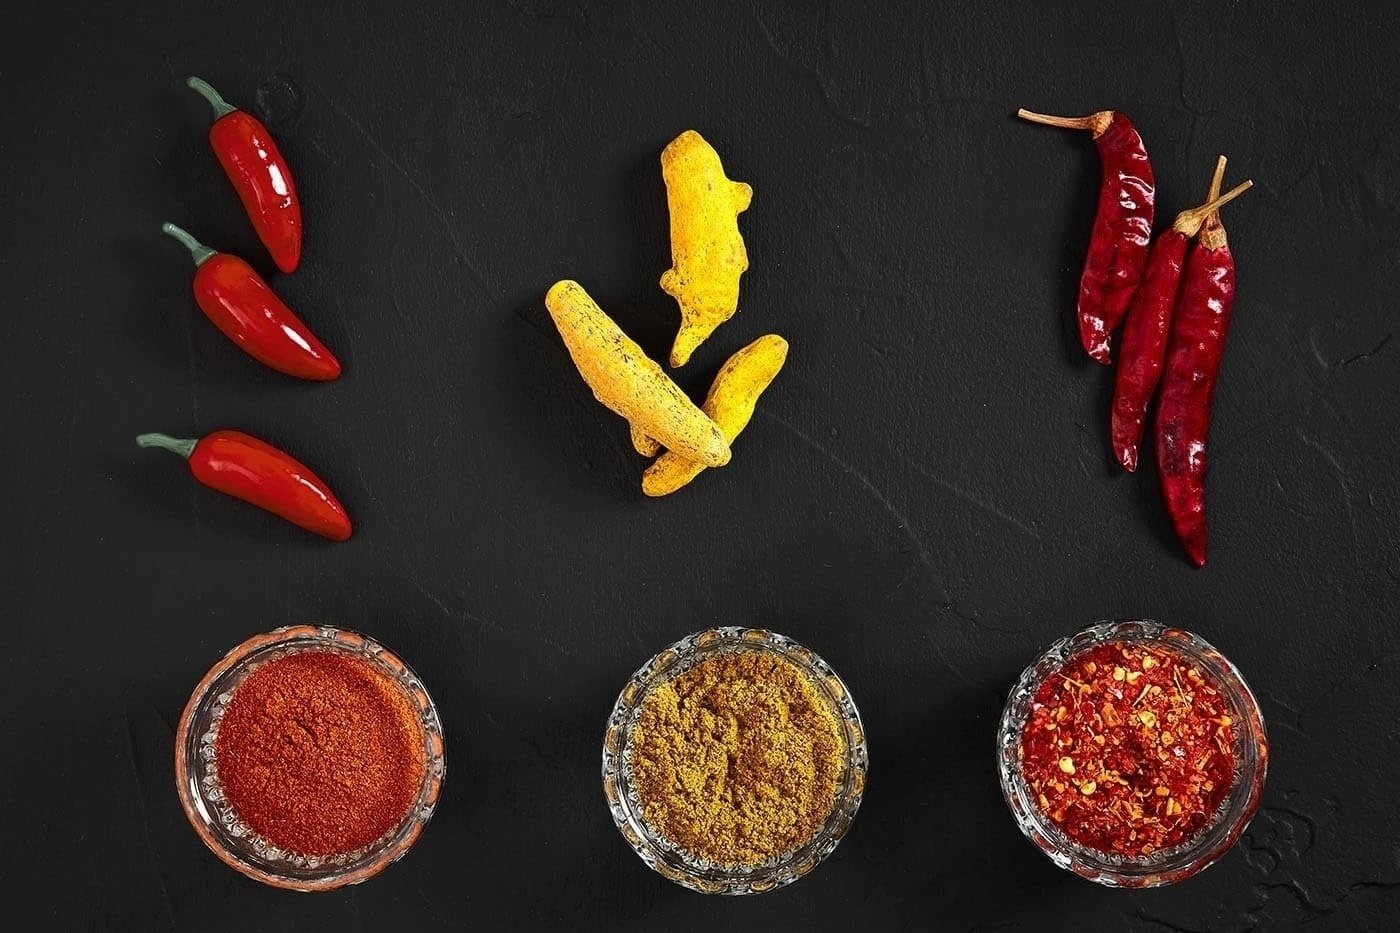 Diferentes tipos de pimentão usados na comida picante mexicana